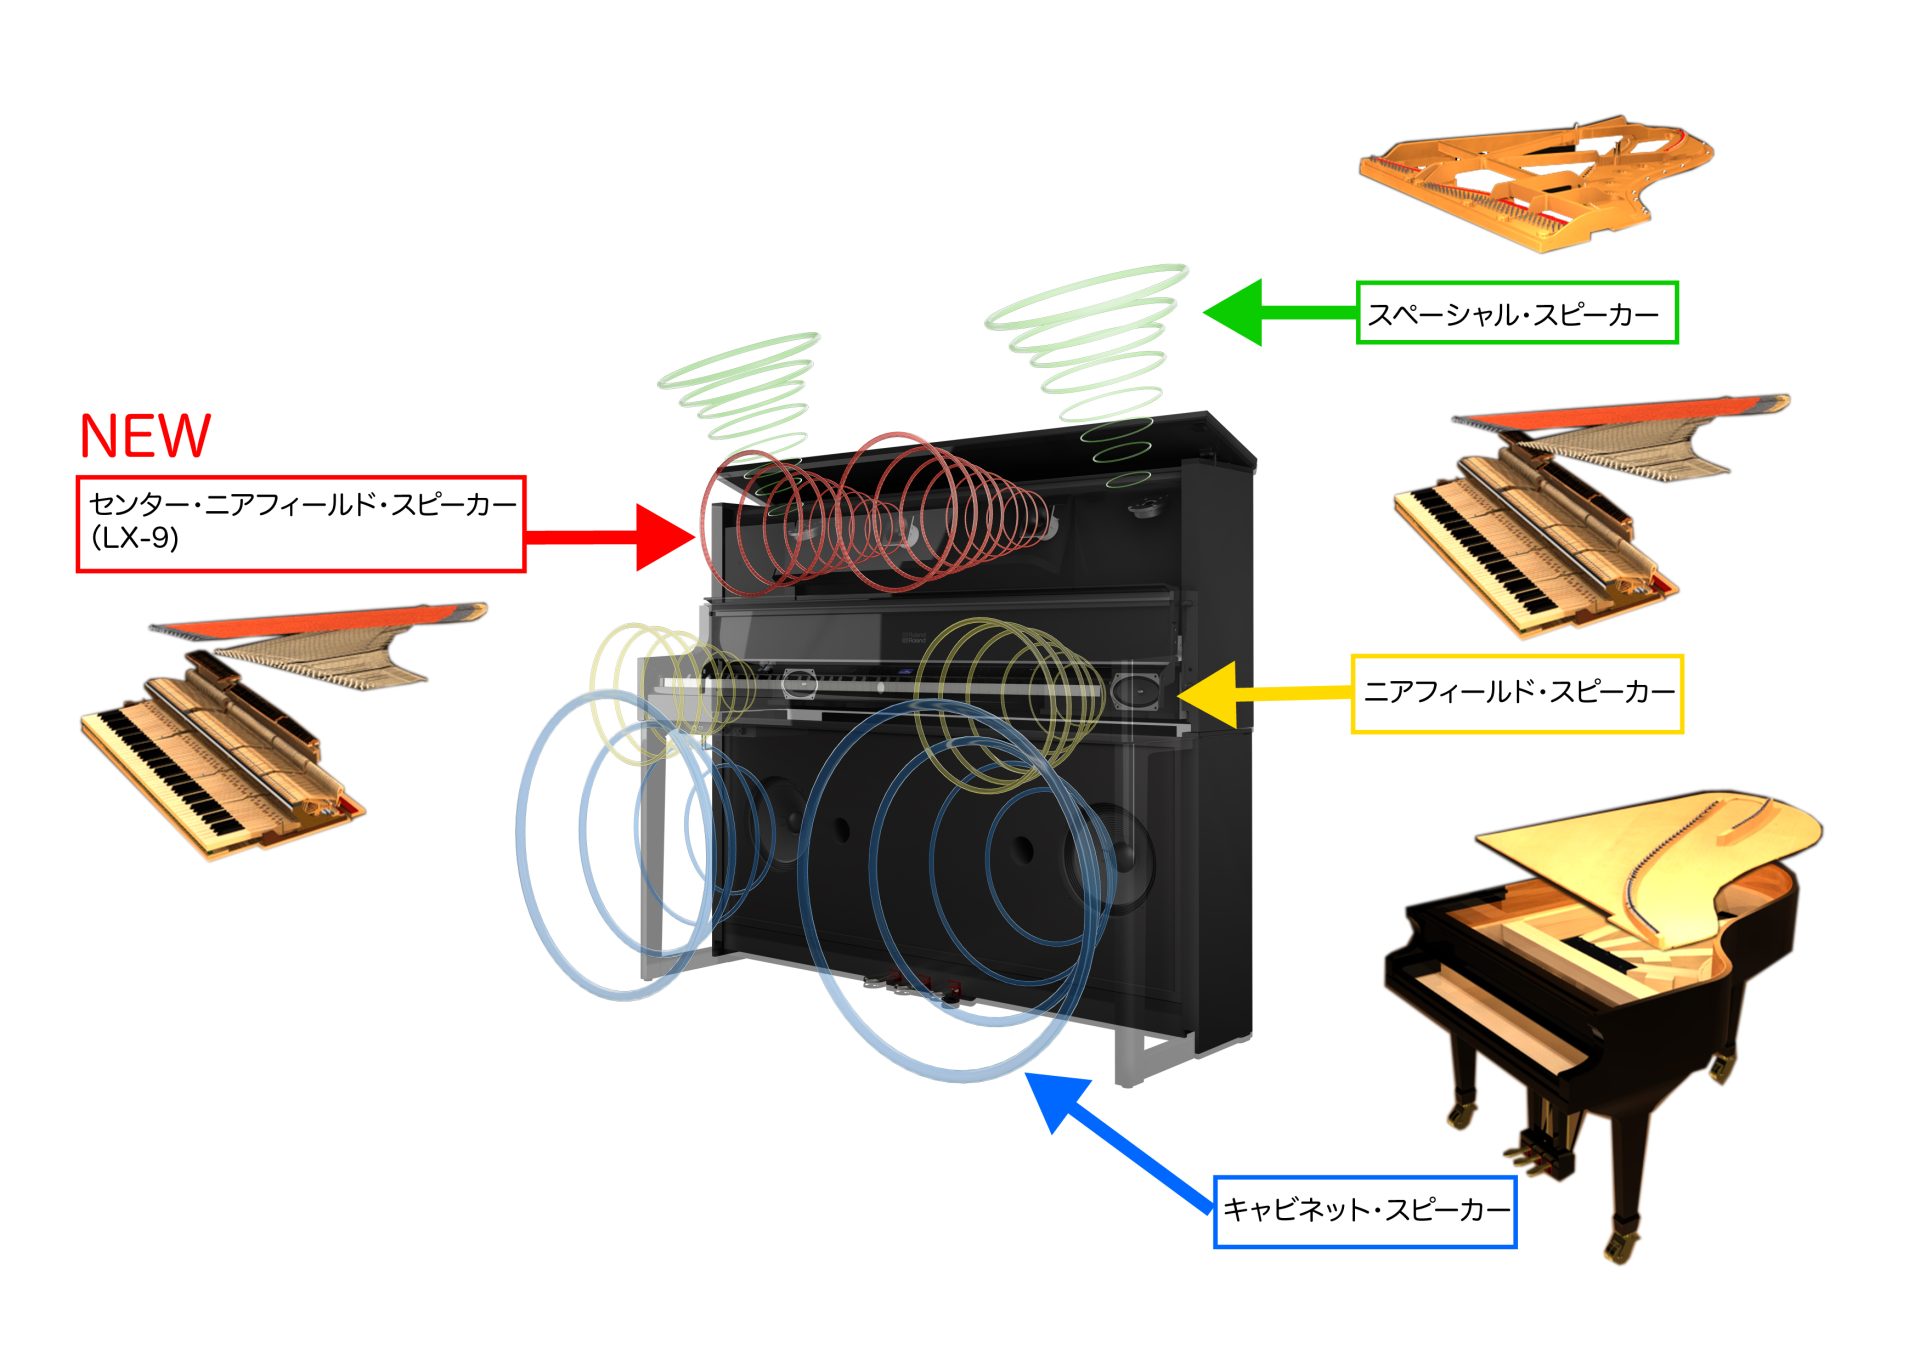 グランドピアノの響きと音場を再現するサウンド・システム「ピアノ・リアリティ・プロジェクション」